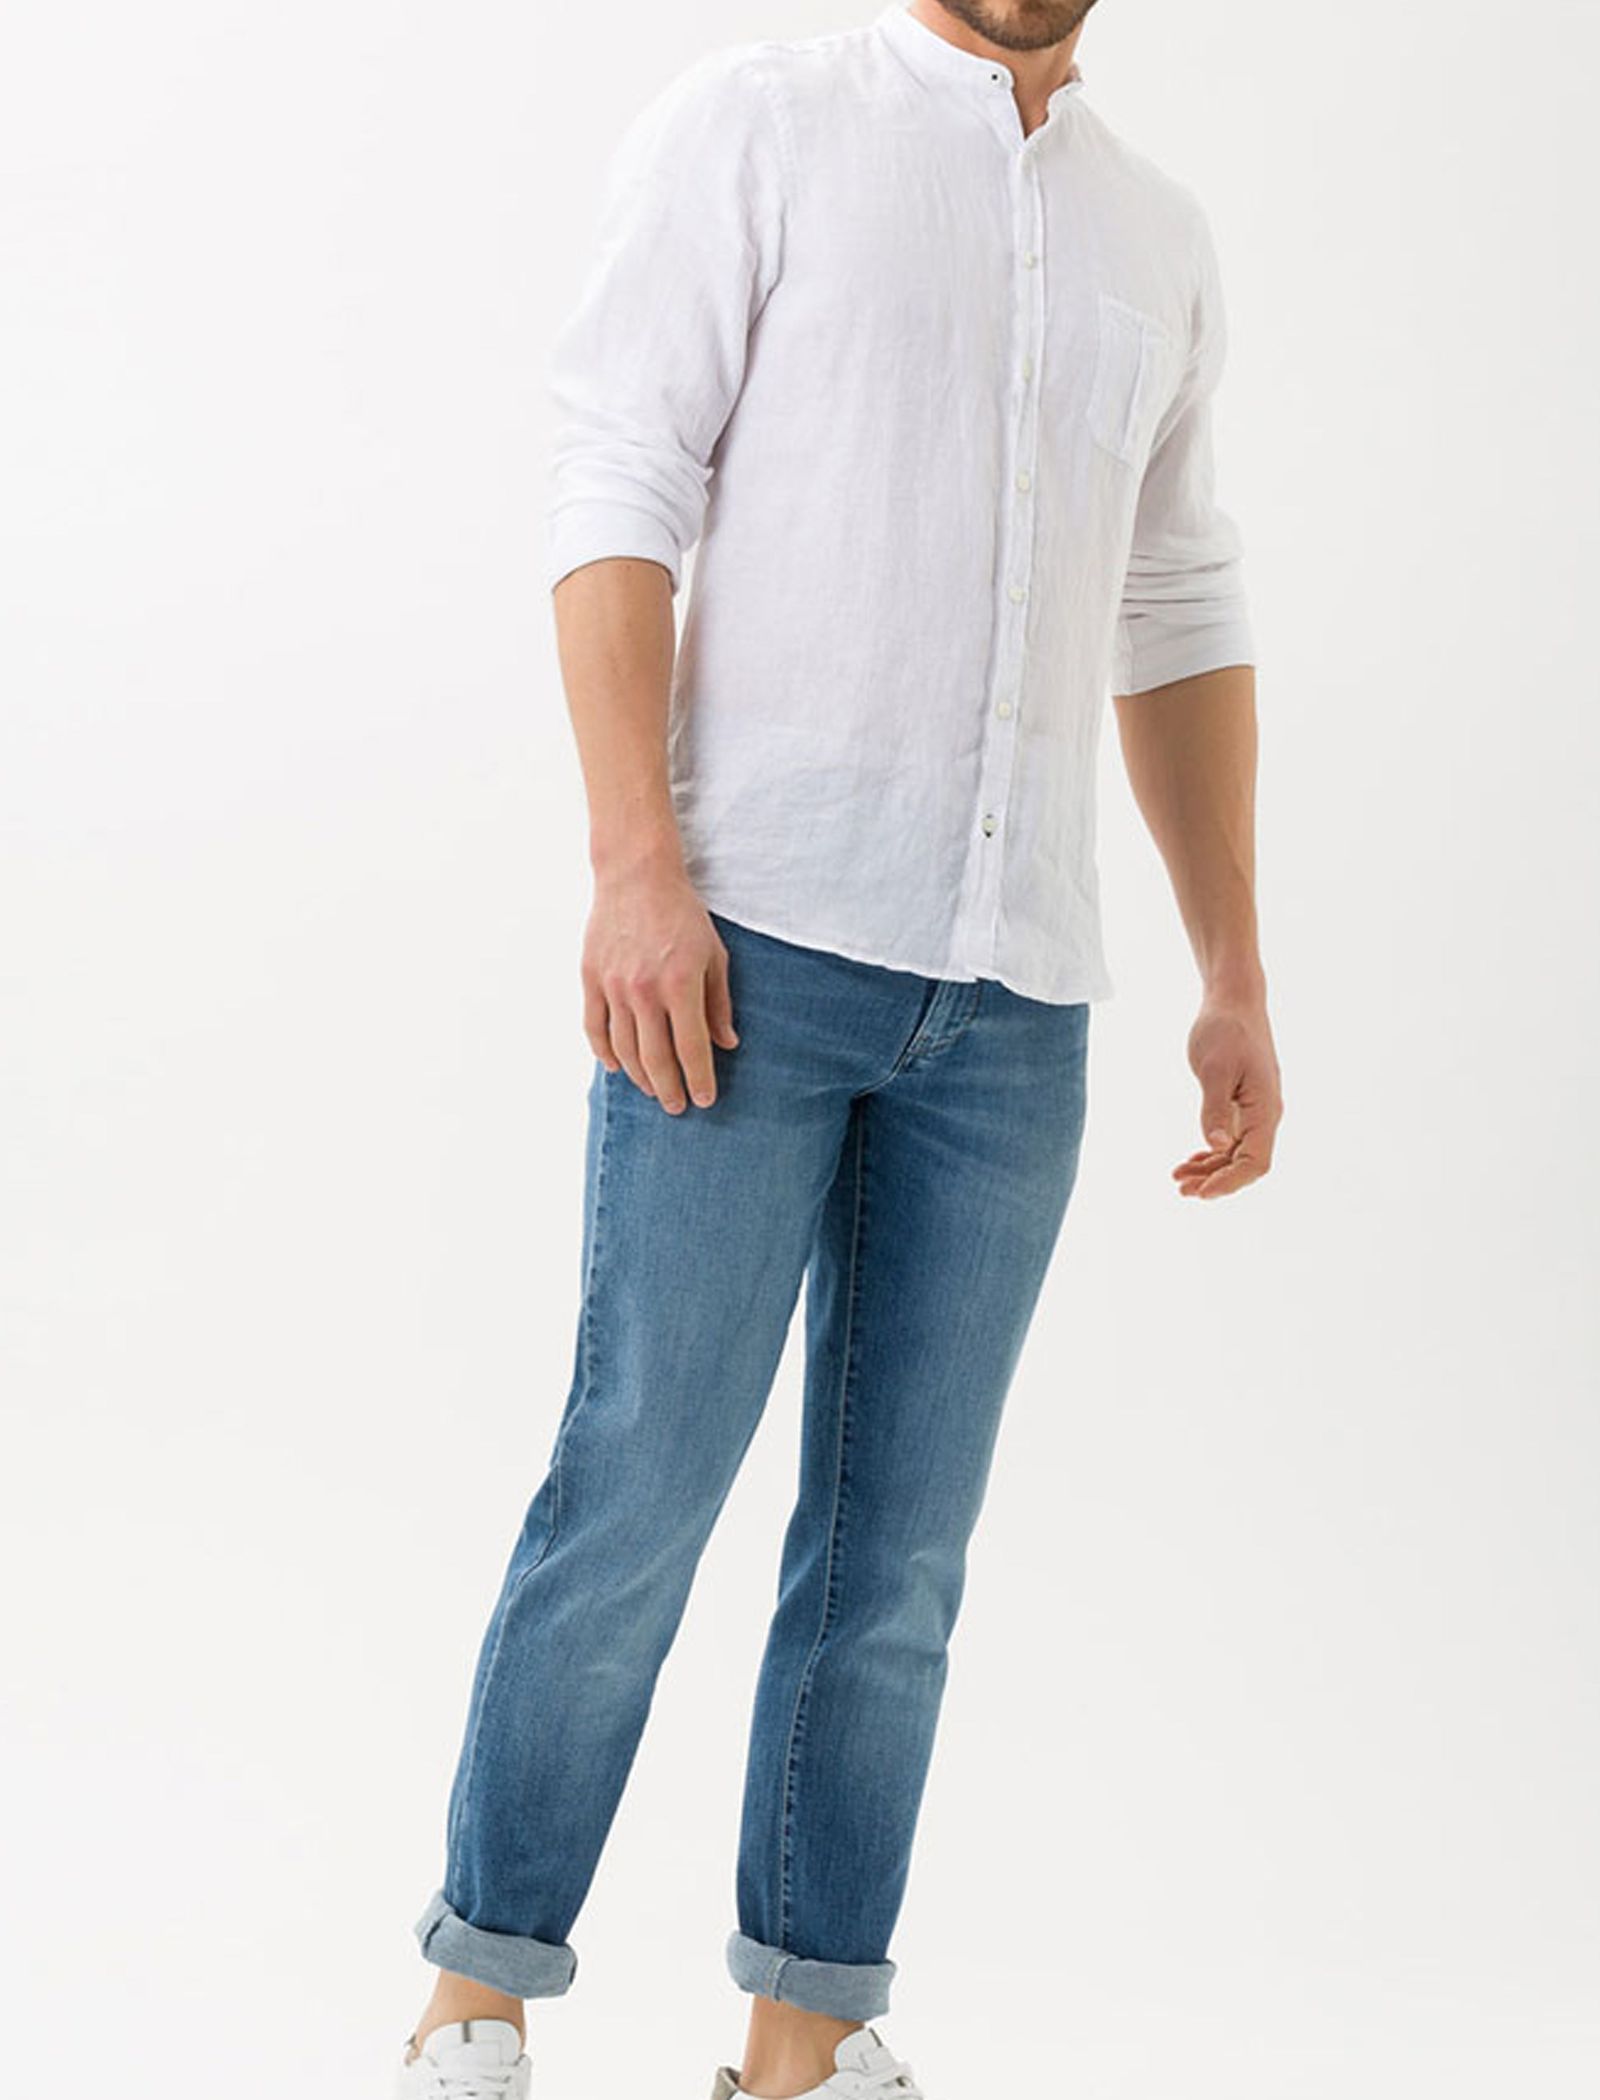 شلوار جین راسته مردانه Cadiz - برکس - آبي  - 4